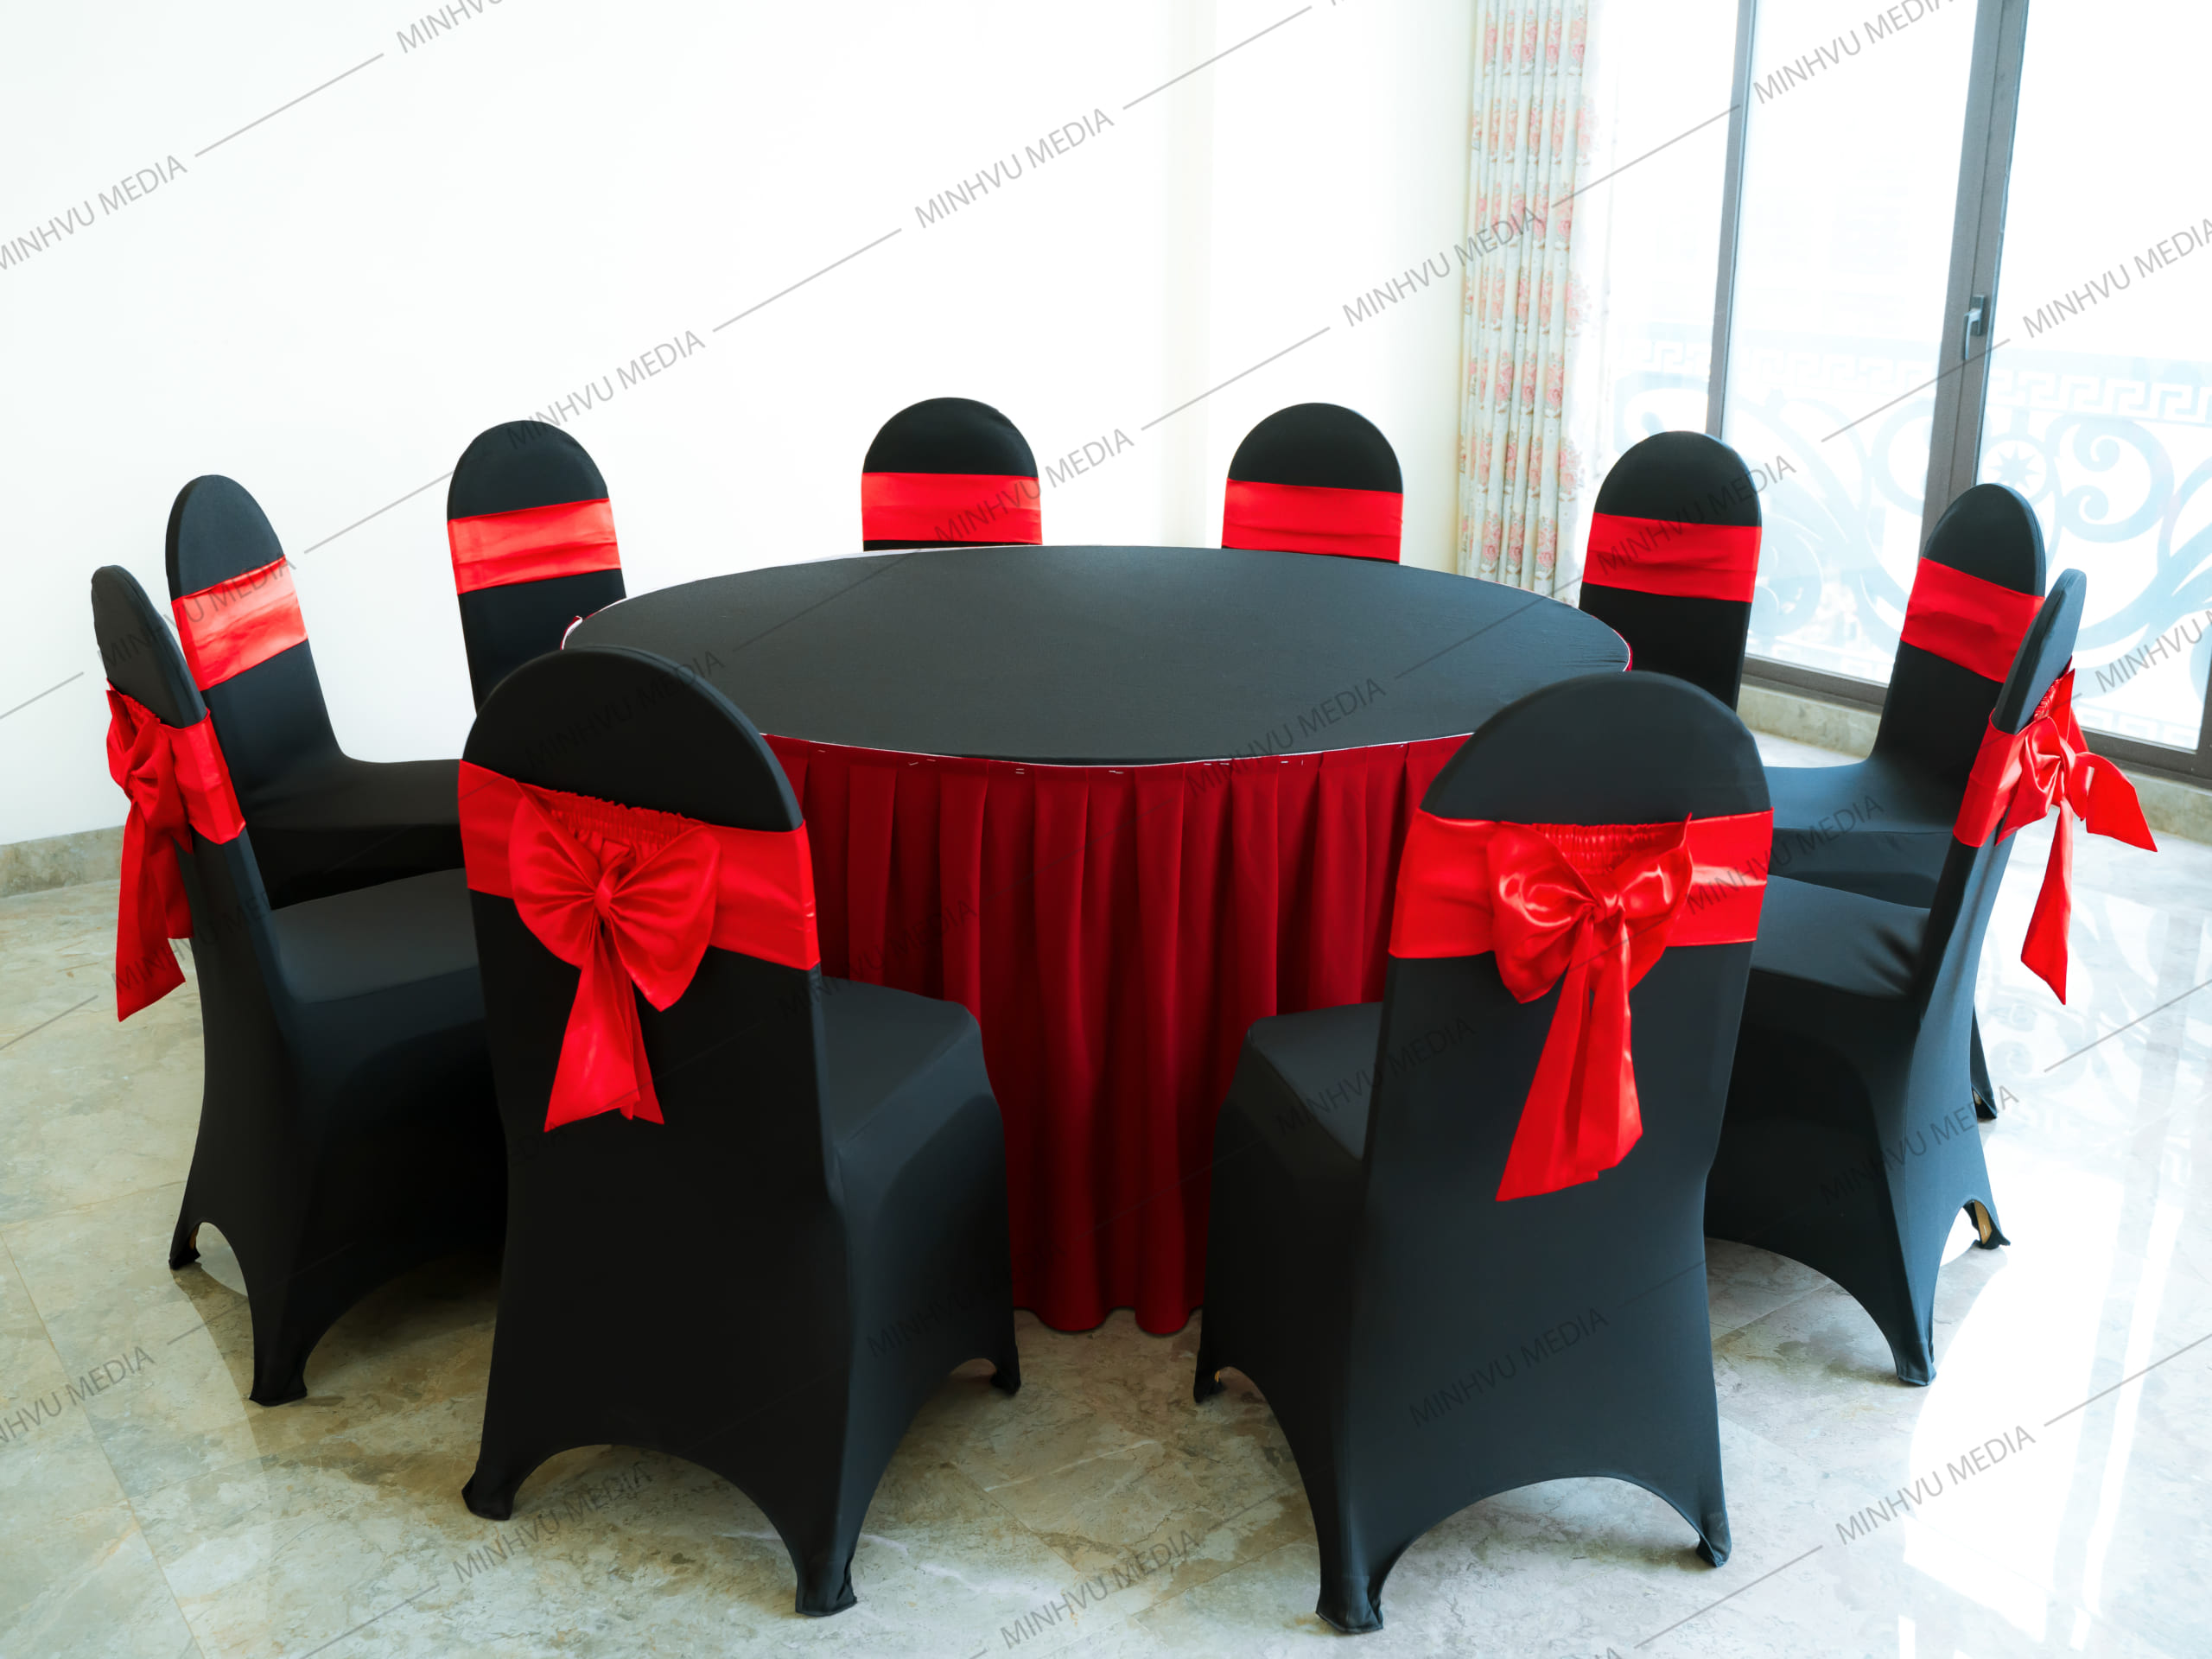 Bộ bàn ghế banquet tròn đen, nơ đỏ